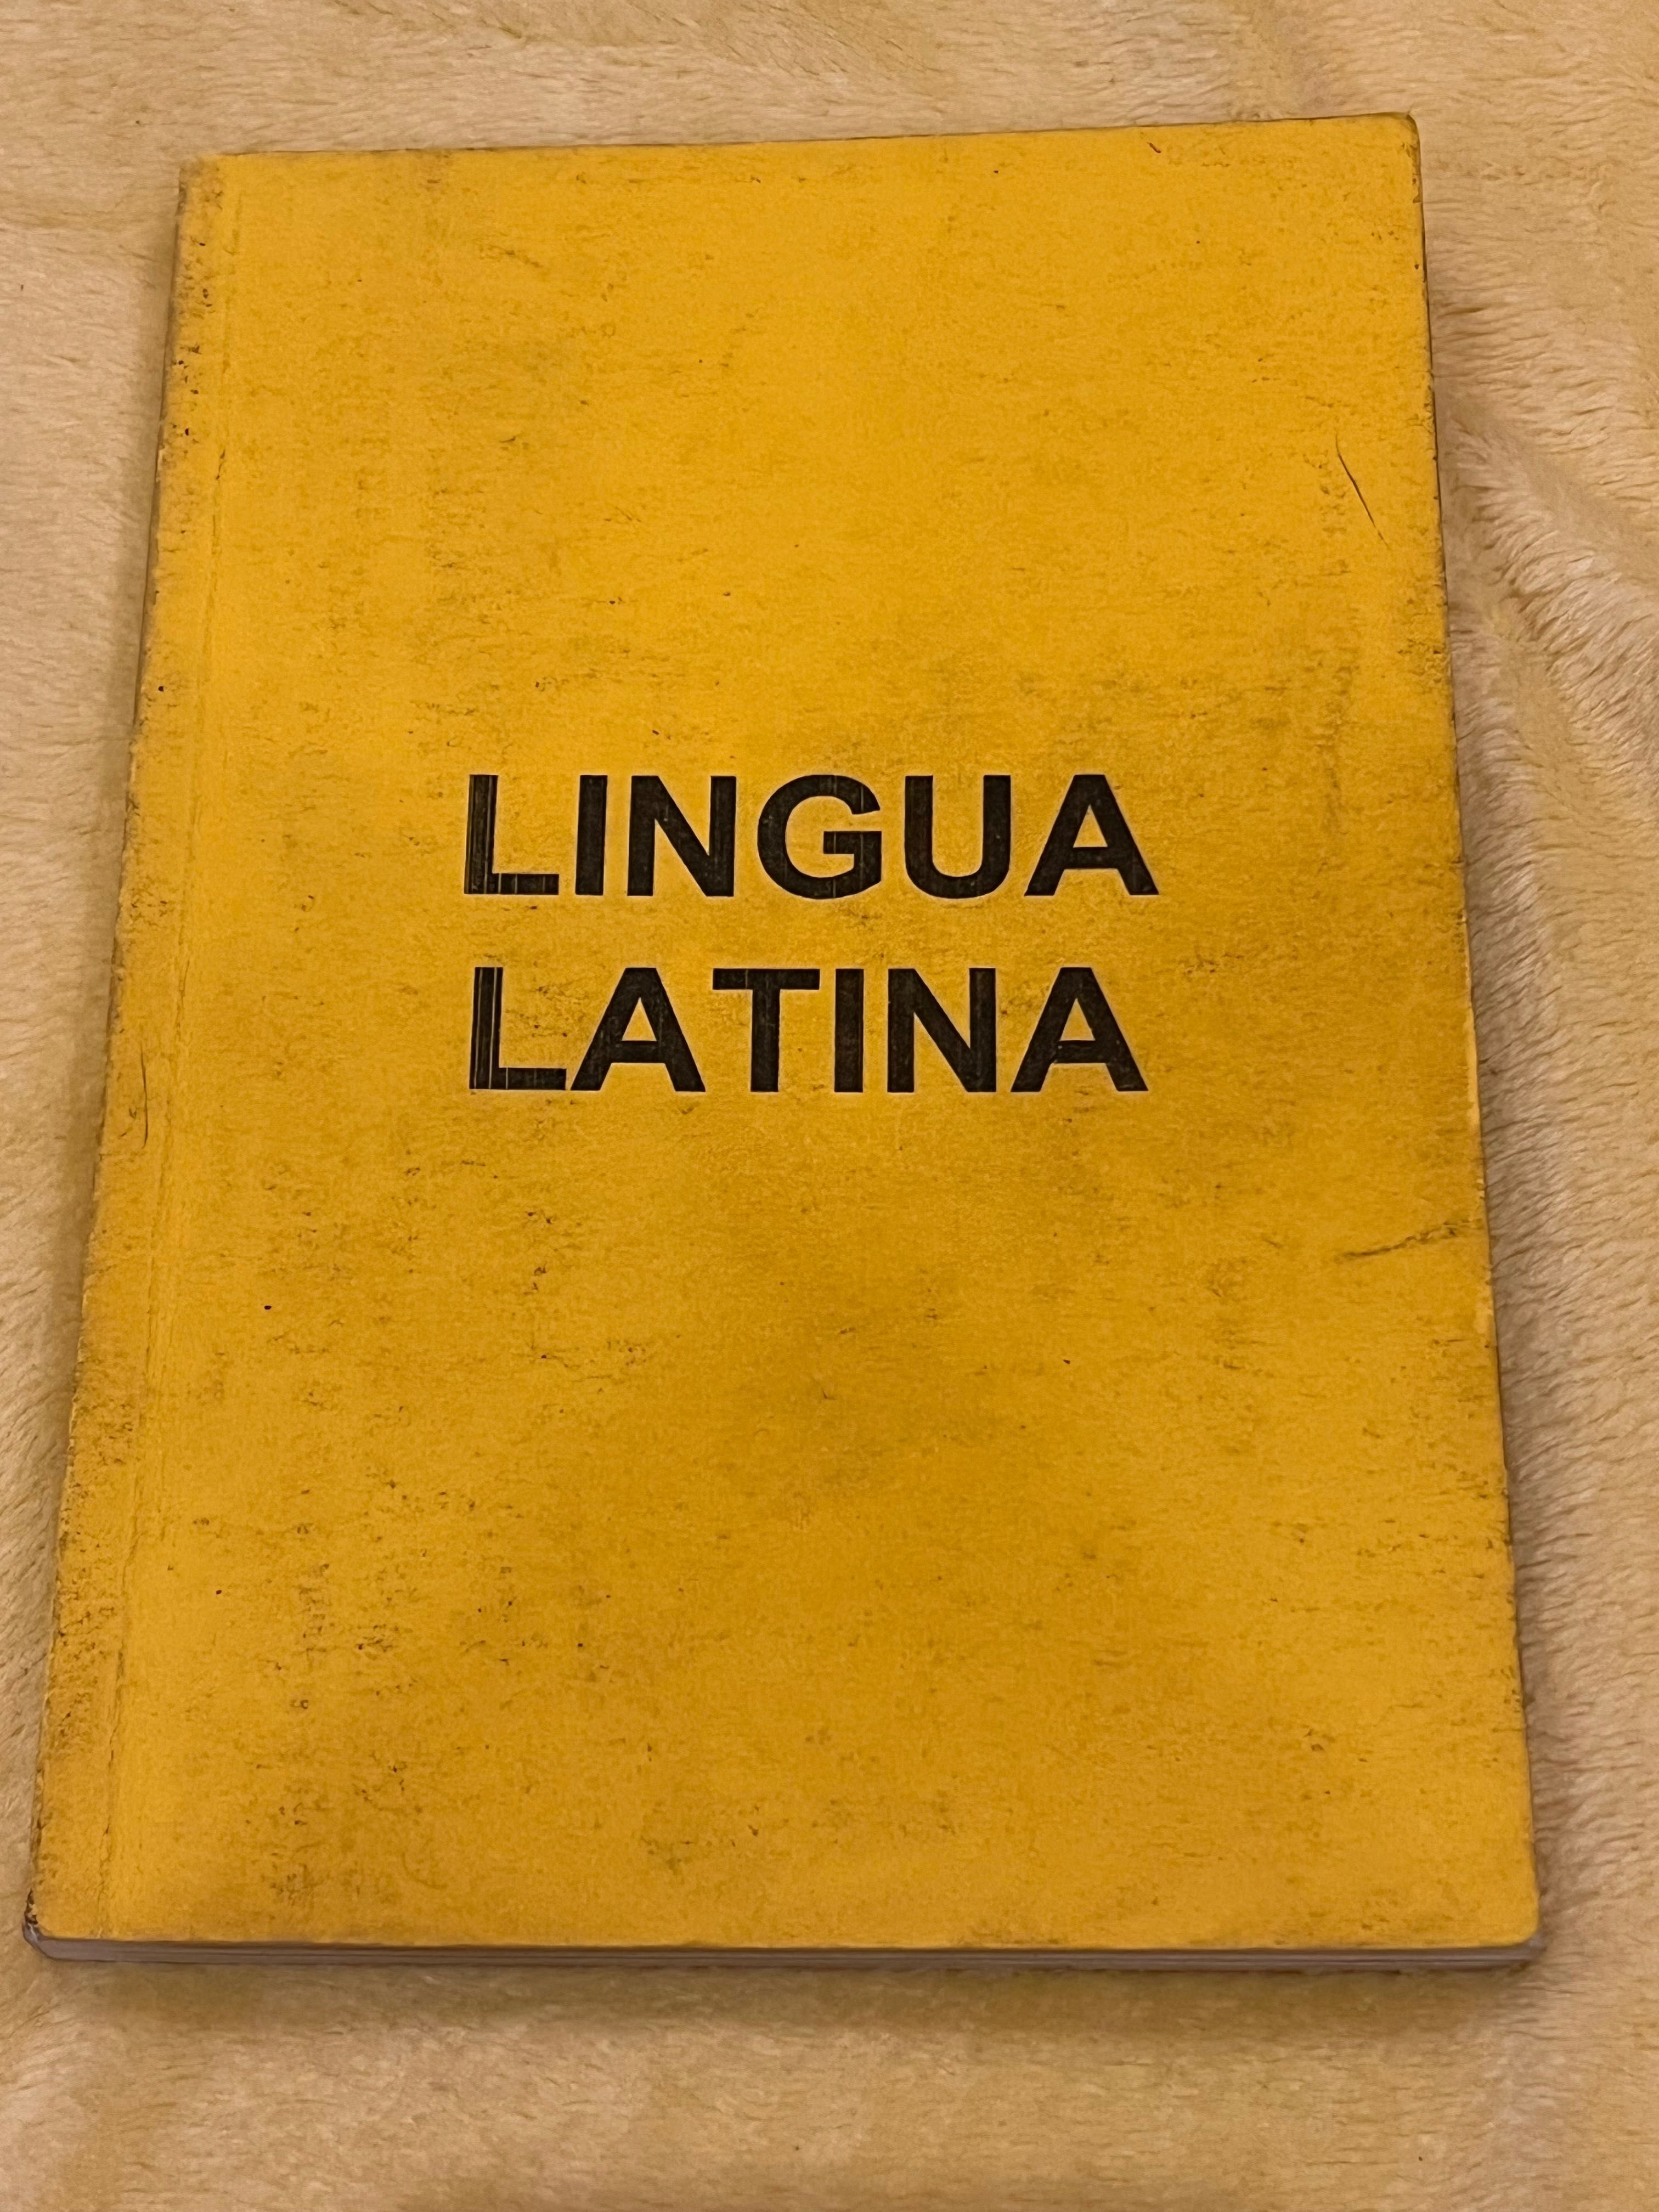 Книга з латинської мови для медицини